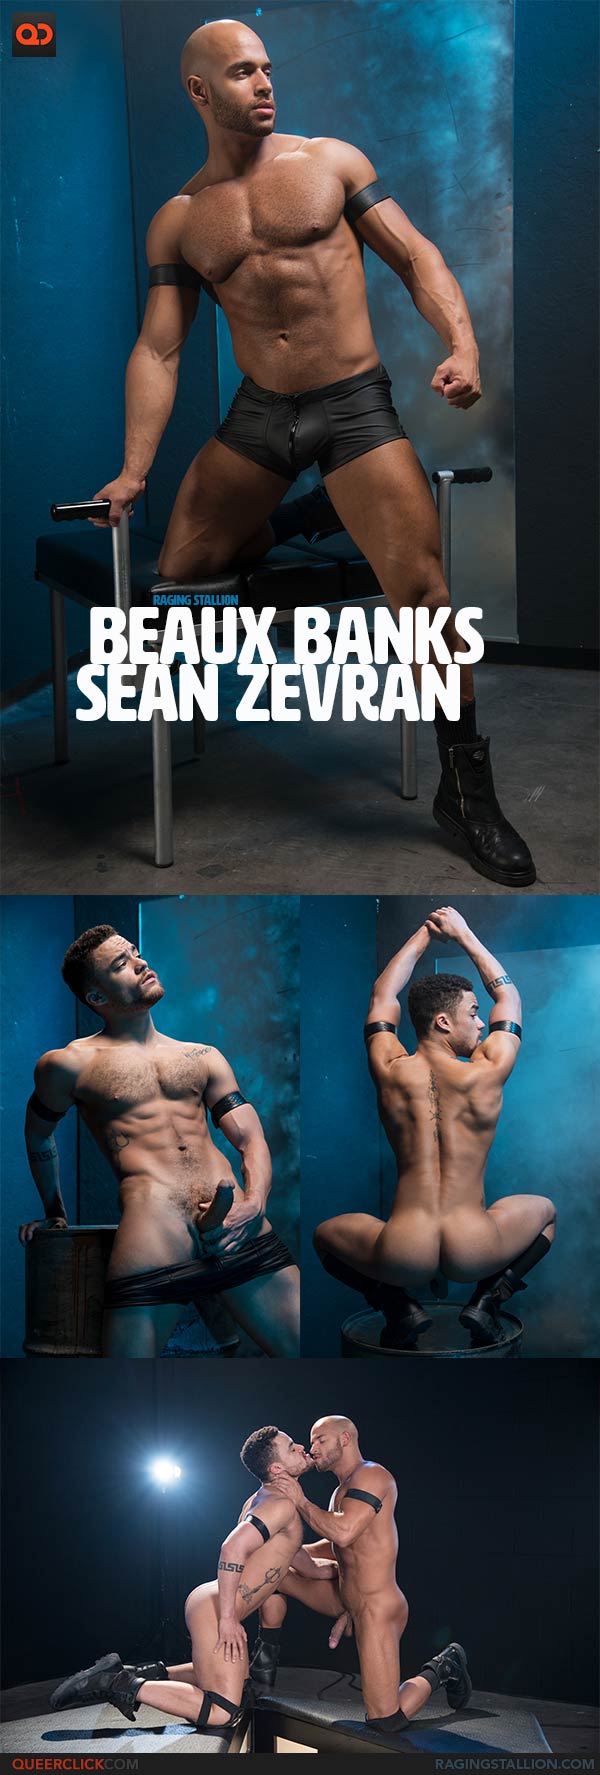 Raging Stallion: Sean Zevran and Beaux Banks